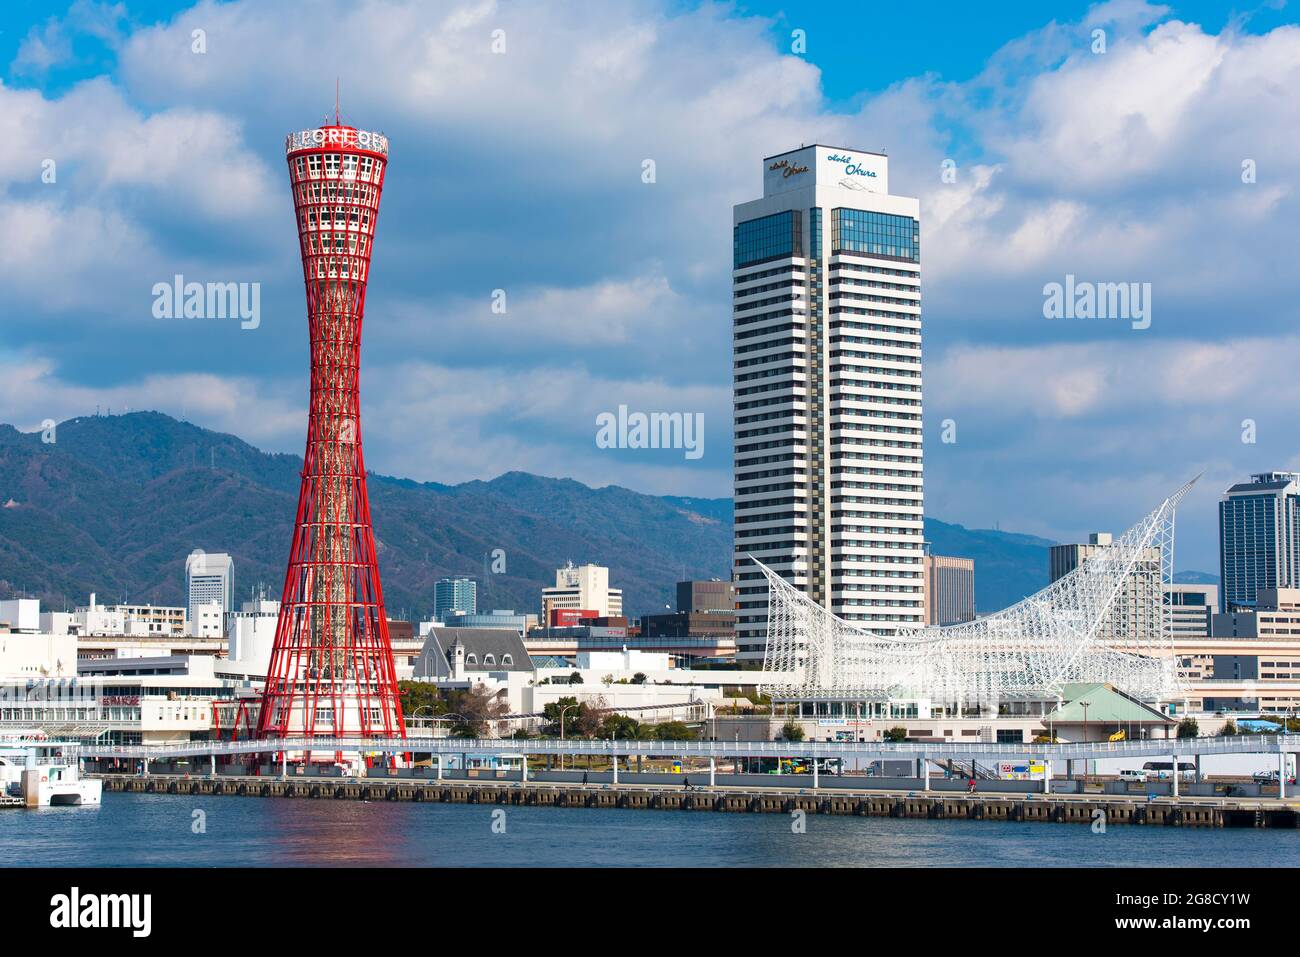 KOBE - 11 JANVIER : vue panoramique de la tour du port de Kobe et du port de Kobe Kansai le 11 janvier. 2017 au Japon Banque D'Images